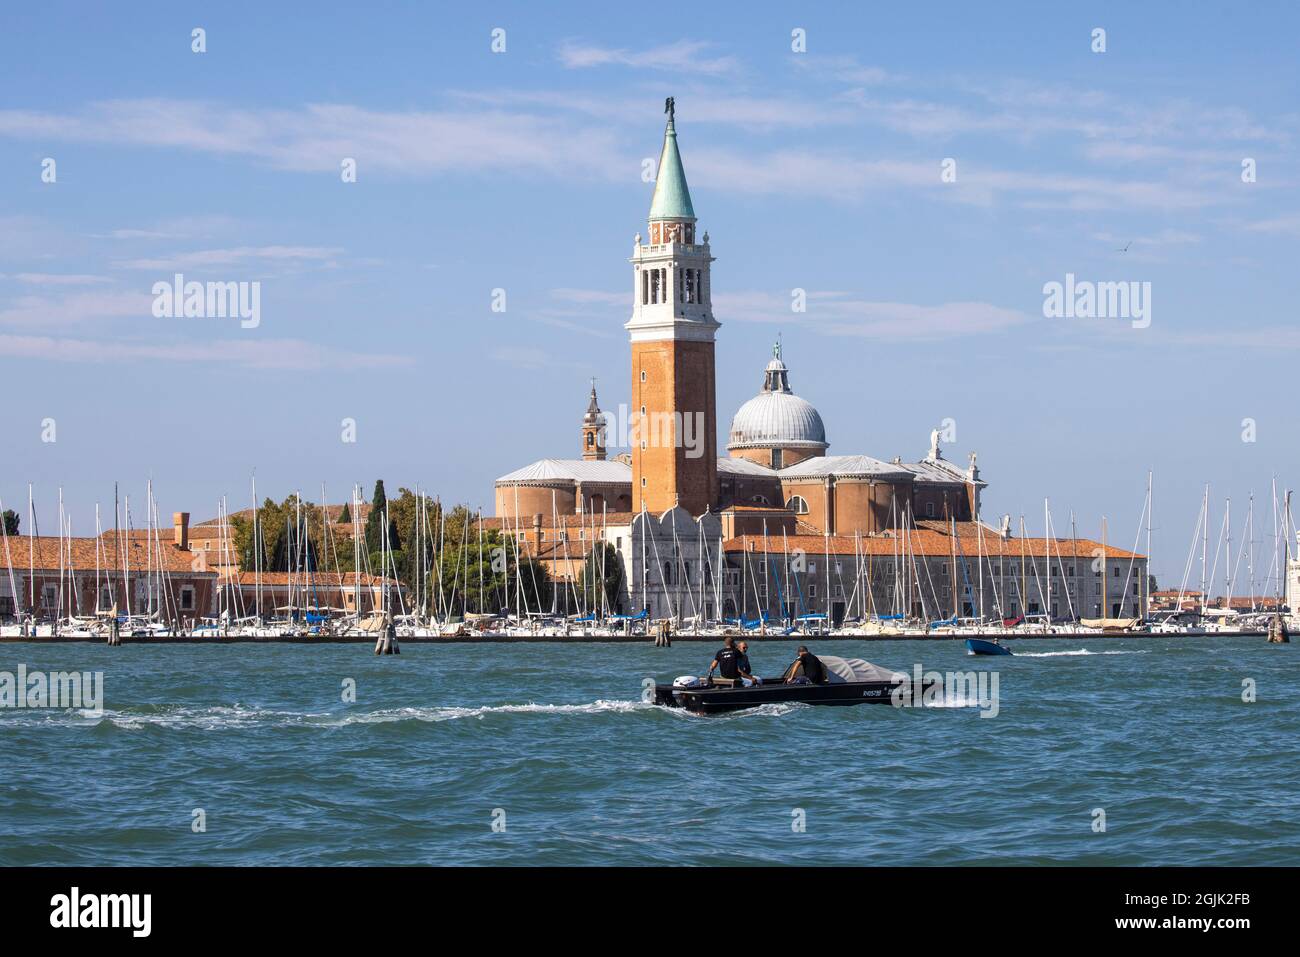 Ein Boot fährt an der Insel San Giorgio Maggiore vorbei, die sich gegenüber dem Markusplatz in Venedig befindet und östlich der Giudecca liegt und von Monet gemalt wurde. Stockfoto